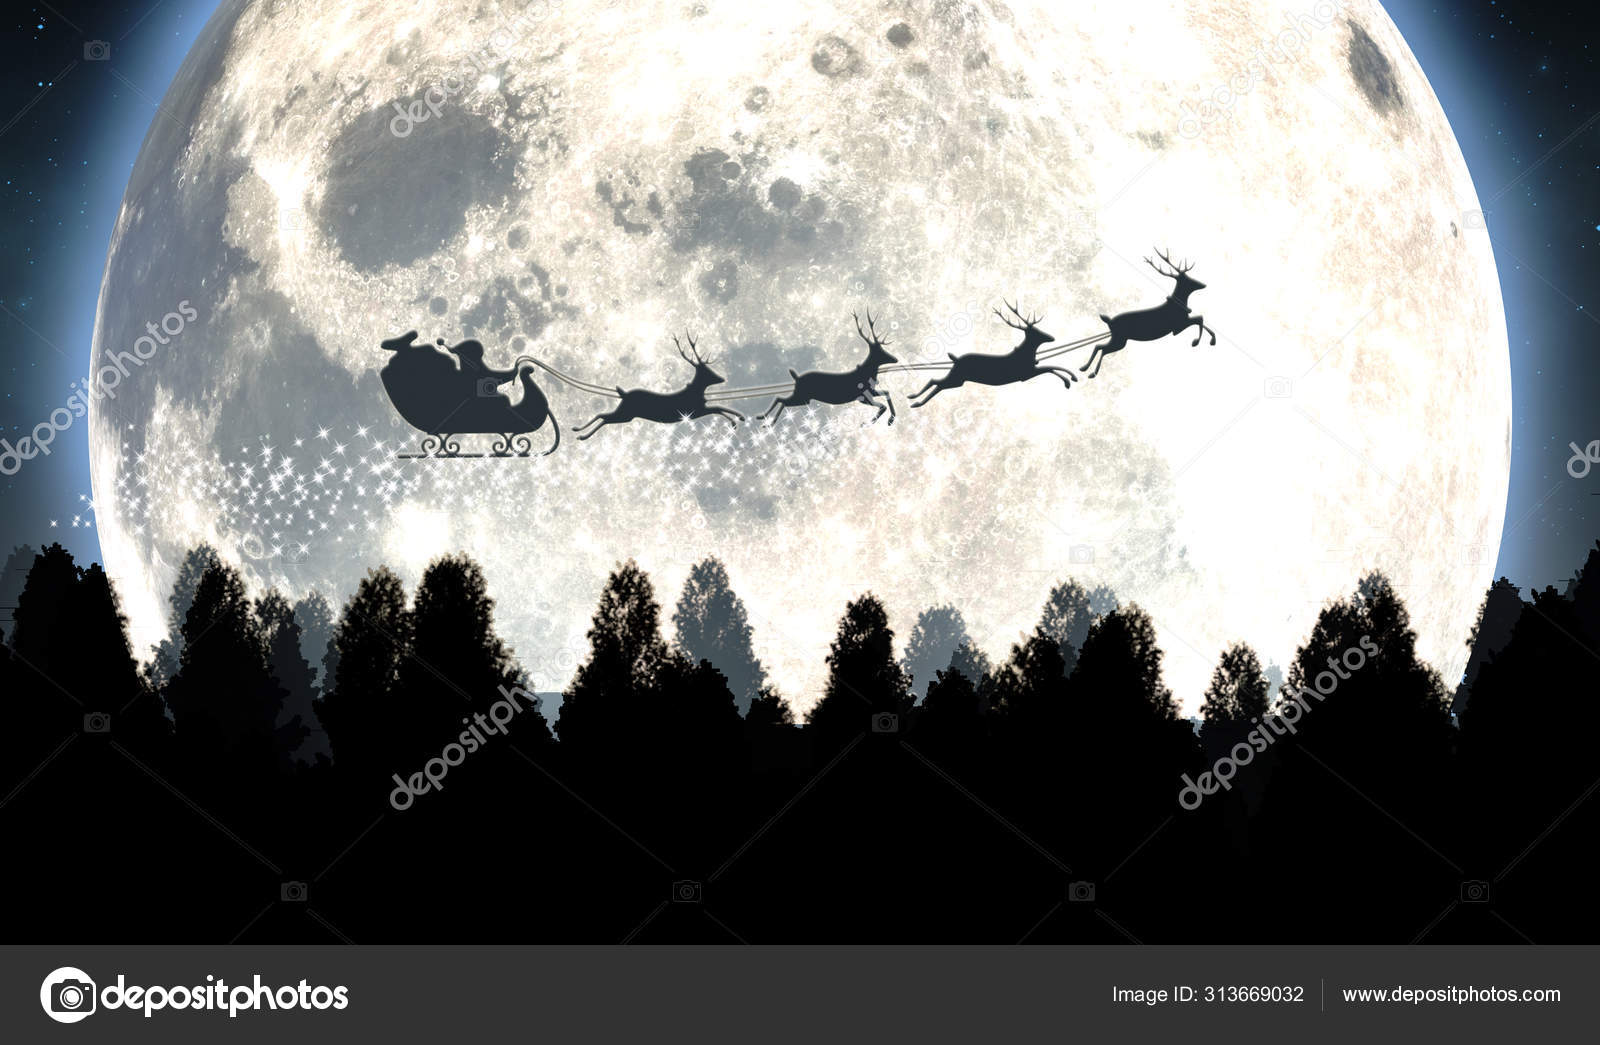 WalMart Christmas Santa Sleigh Full Moon Silhouette 2013 Gift Card FD-36221